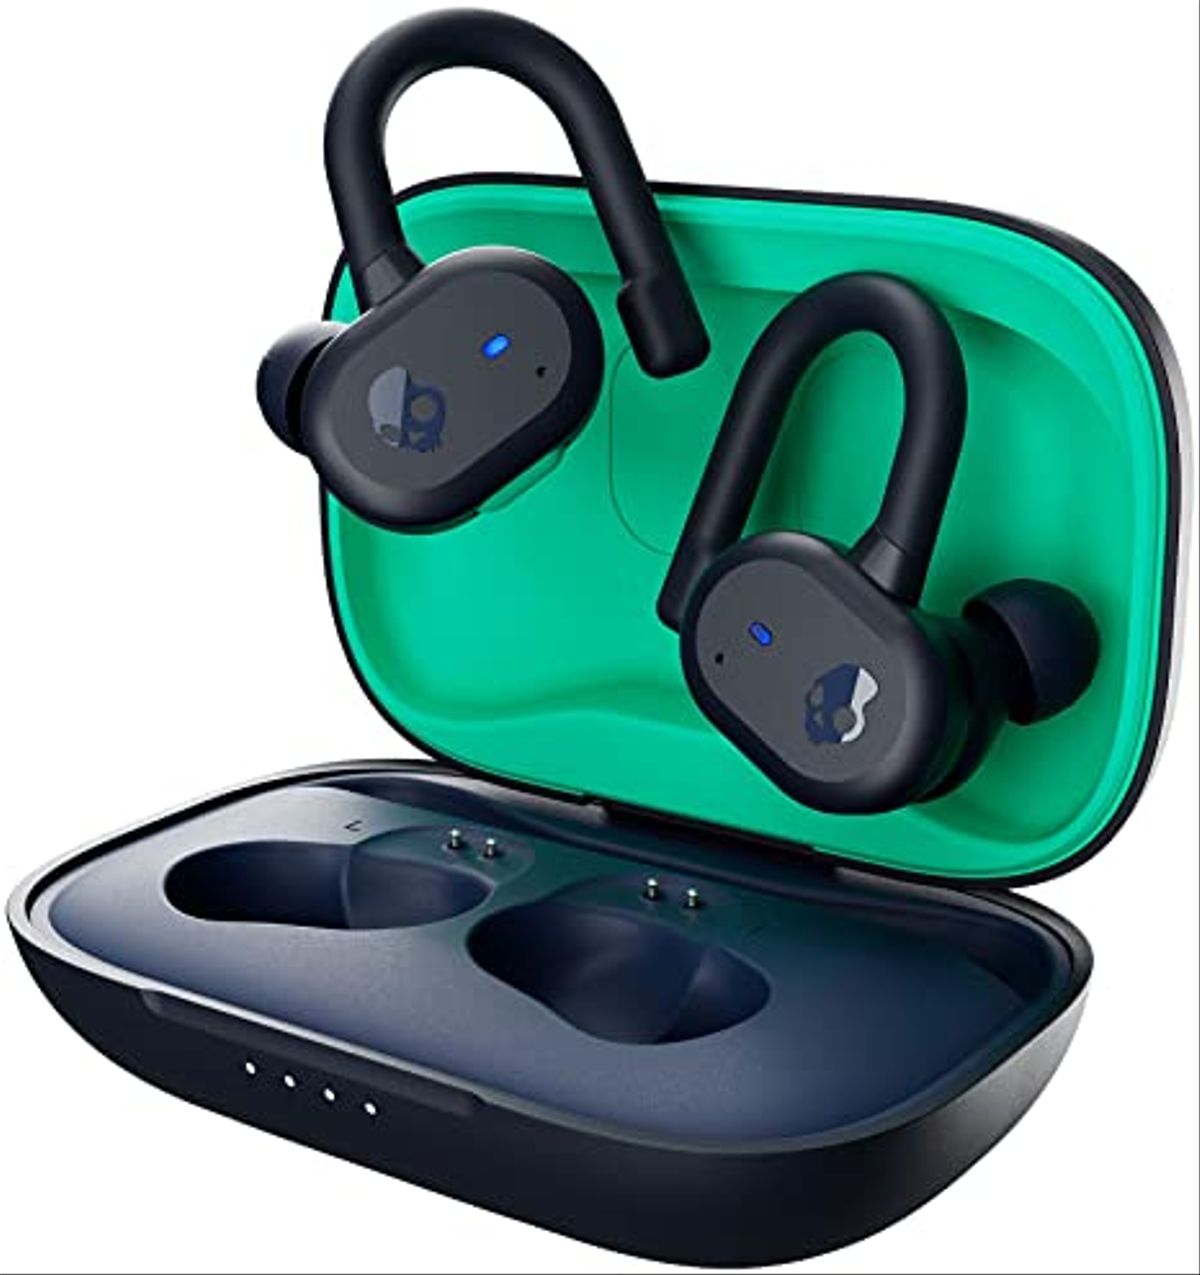 Los nuevos auriculares inalámbricos de Xbox llegarán en marzo por un precio  de 99,99 euros